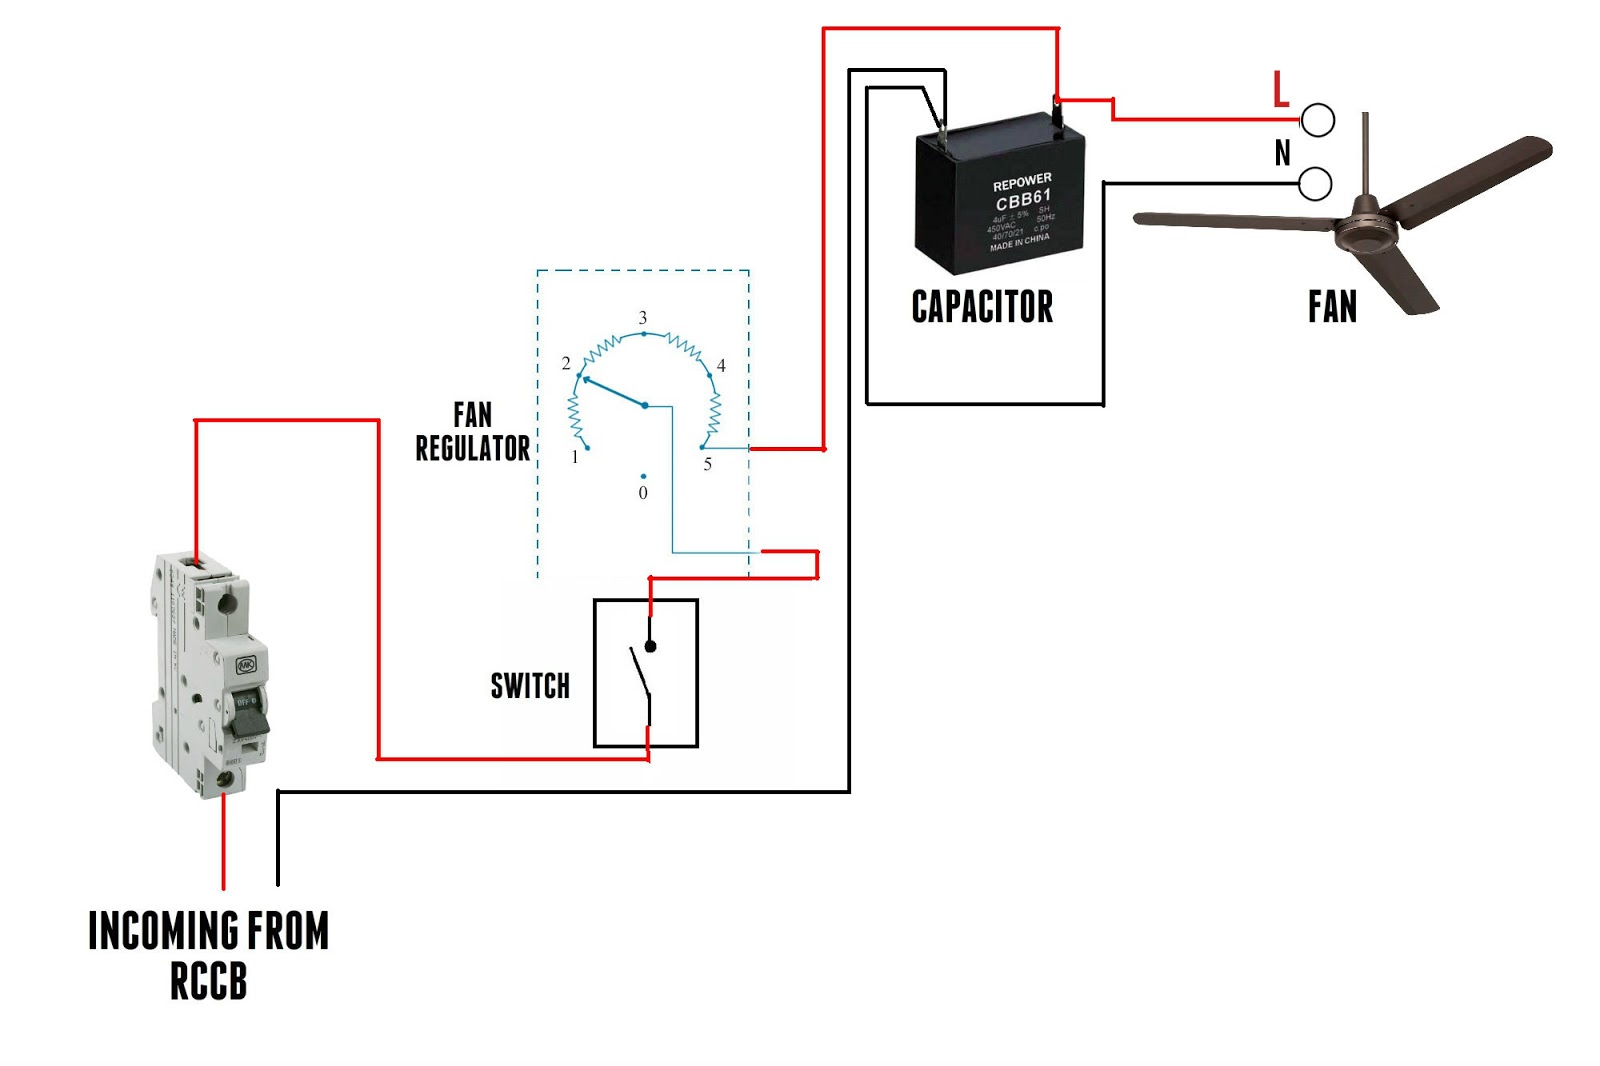 [DIAGRAM] Cbb61 Fan Capacitor 3 Wire Diagram - MYDIAGRAM.ONLINE